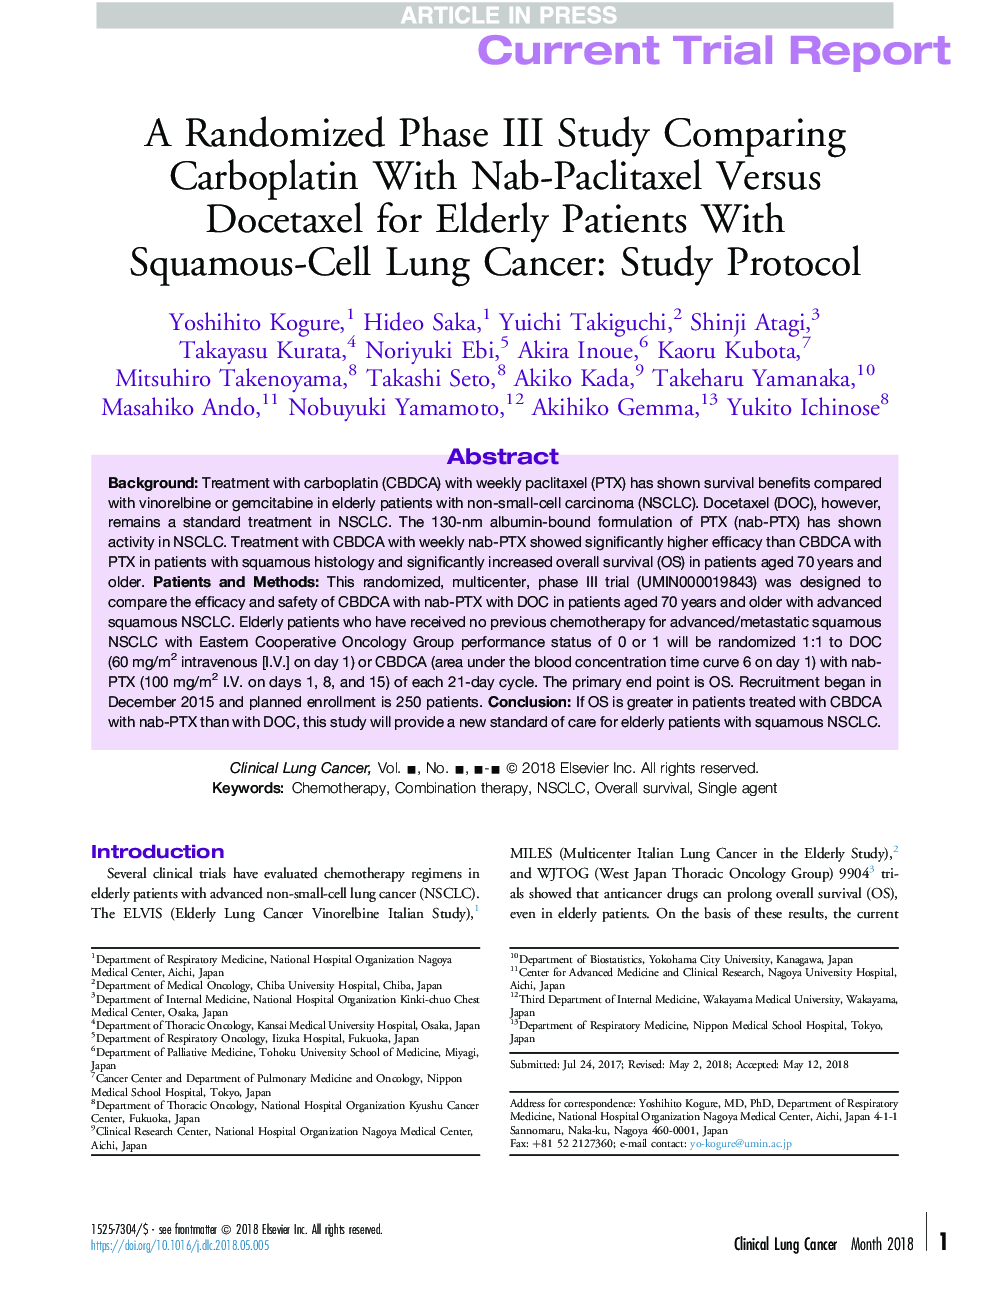 مقایسه ای از کاربوپلاتین با ناب-پکلیتاکسل در برابر دکتاکسل برای بیماران سالمند مبتلا به سرطان ریه اسکاموسی: پروتکل مطالعه